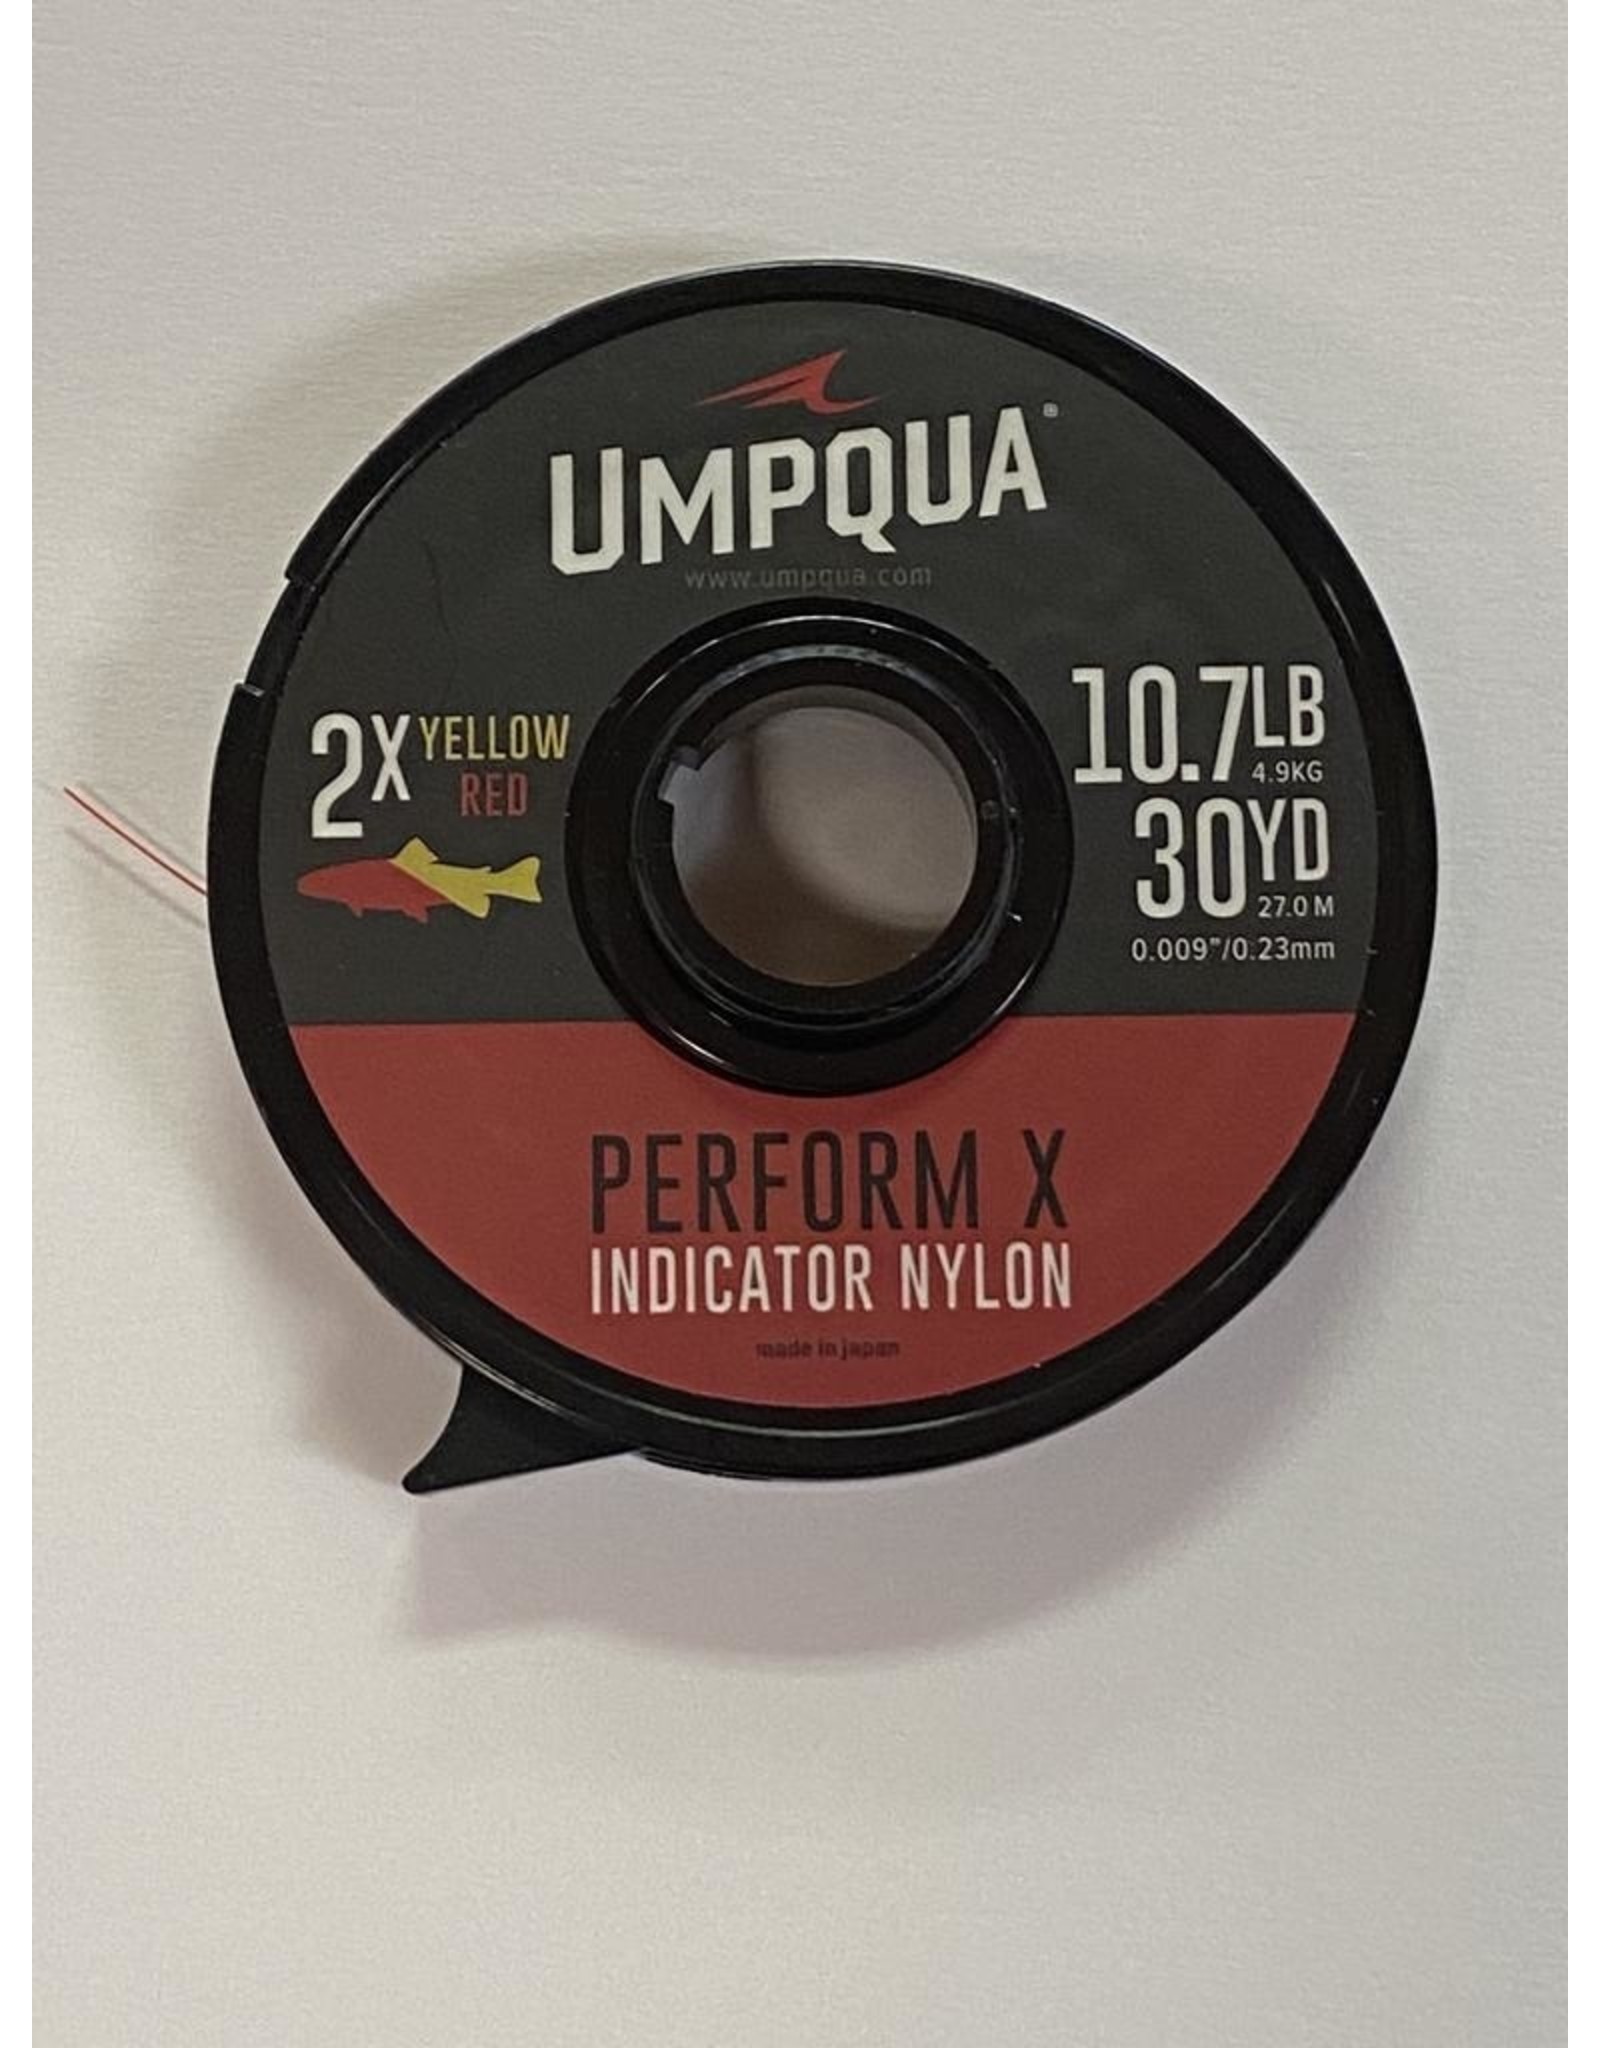 Umpqua Tippet Sale - Umpqua Deceiver X & Umpqua Perform X On Sale